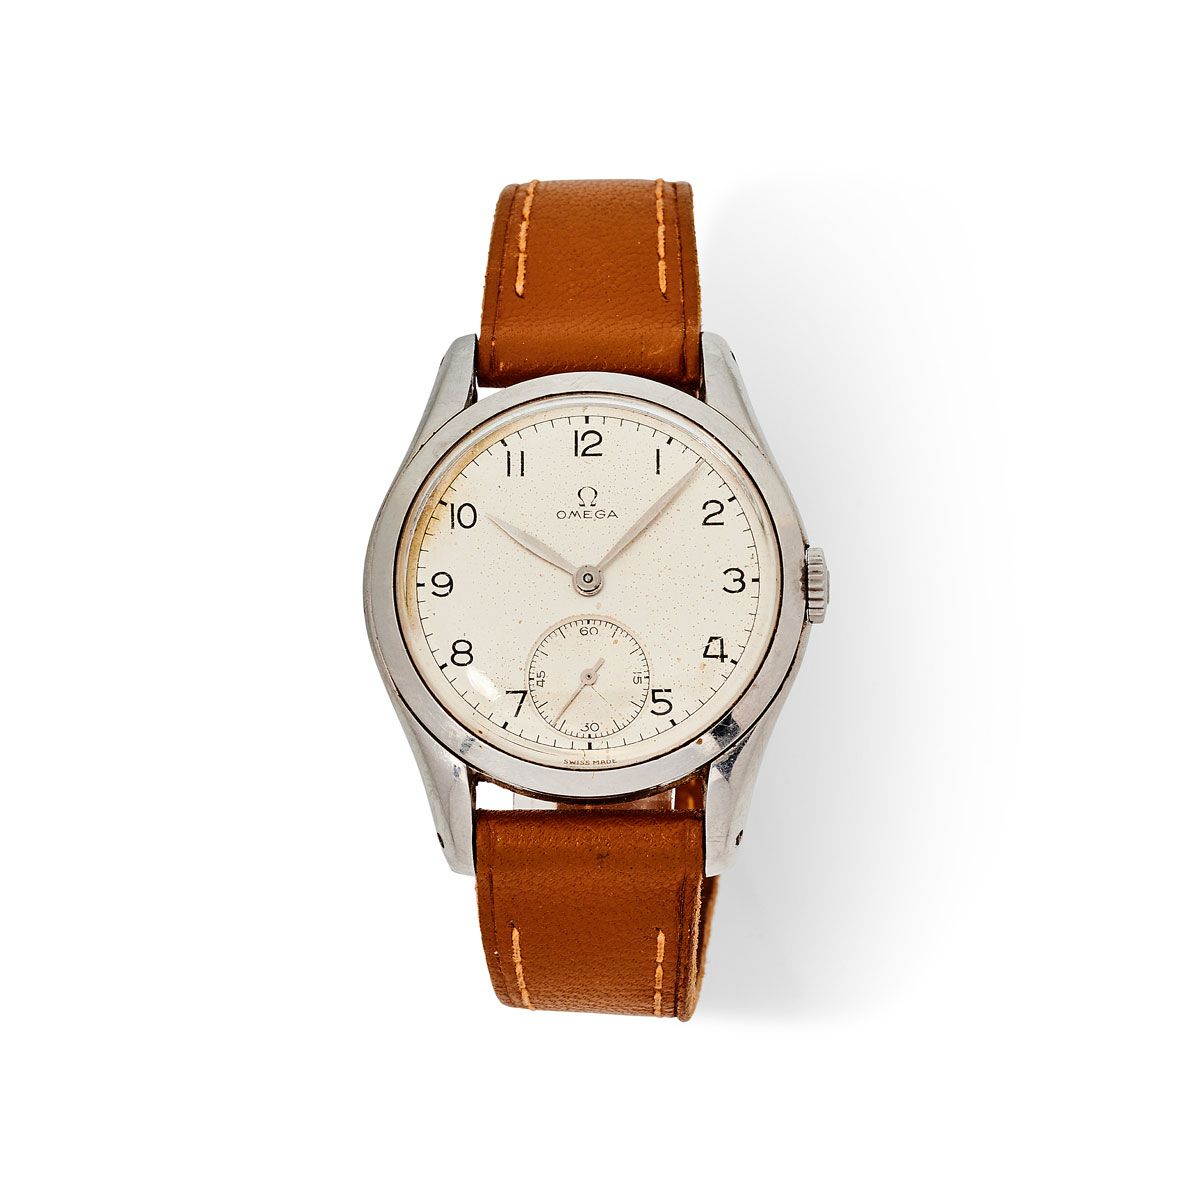 Null Omega, Réf. 2503-2, mvt. N°11322609, vers 1950.

Une belle montre classique&hellip;